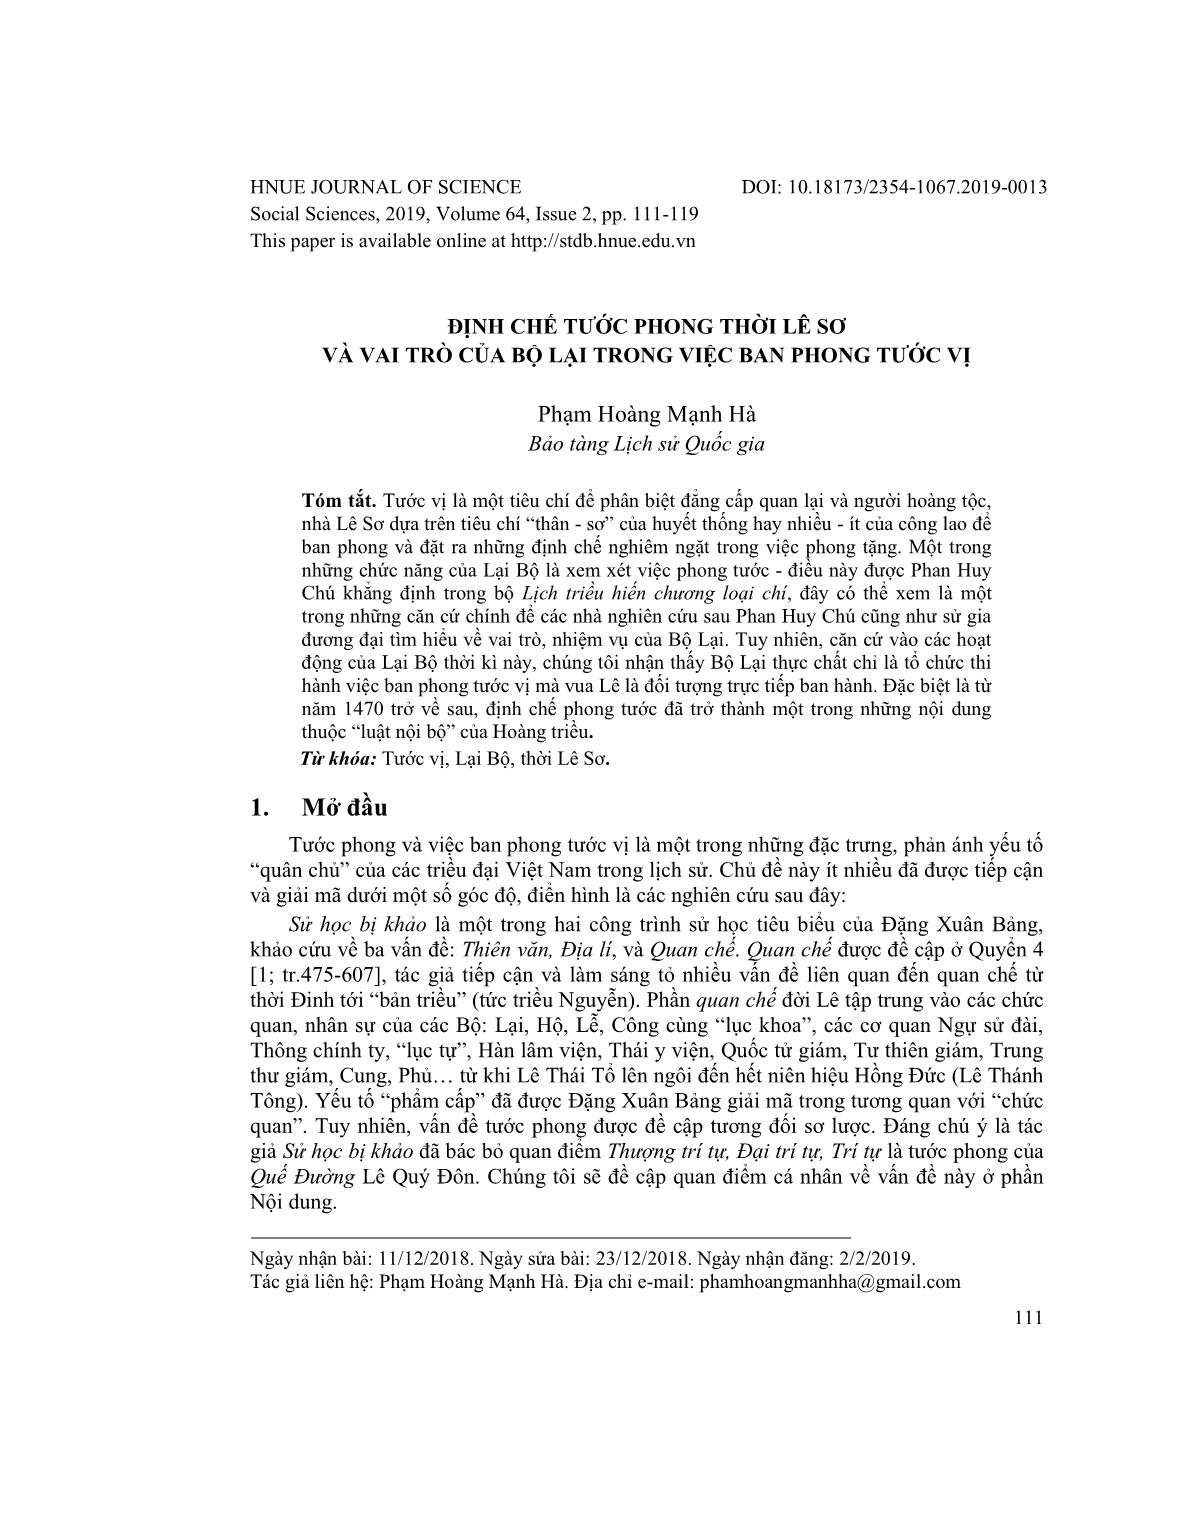 Định chế tước phong thời Lê Sơ và vai trò của bộ lại trong việc ban phong tước vị trang 1